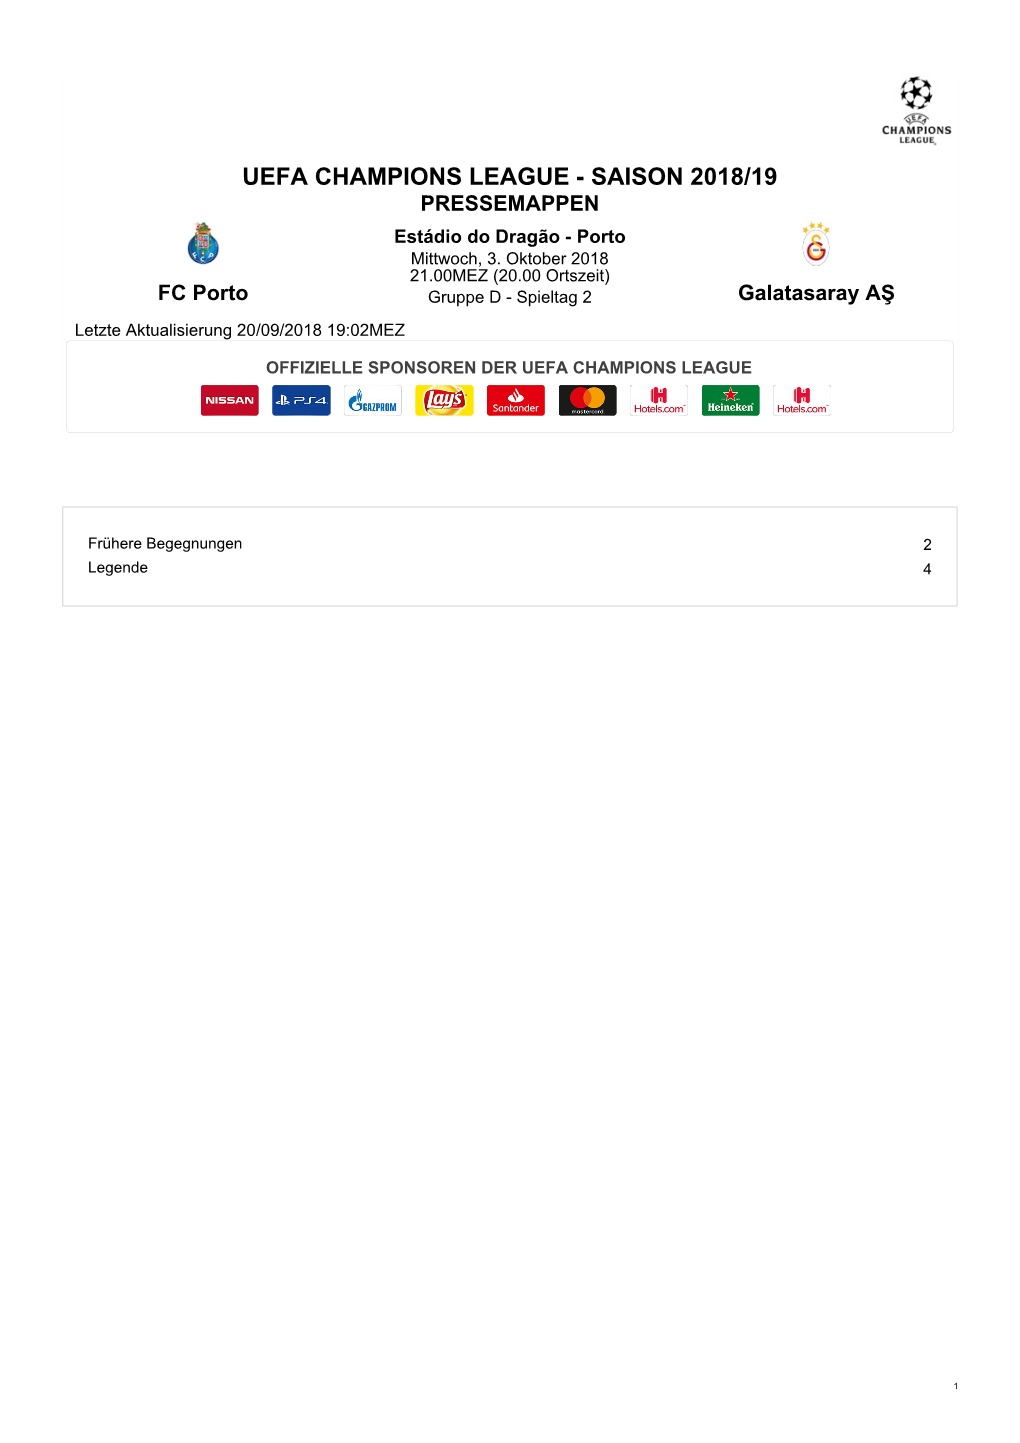 UEFA CHAMPIONS LEAGUE - SAISON 2018/19 PRESSEMAPPEN Estádio Do Dragão - Porto Mittwoch, 3